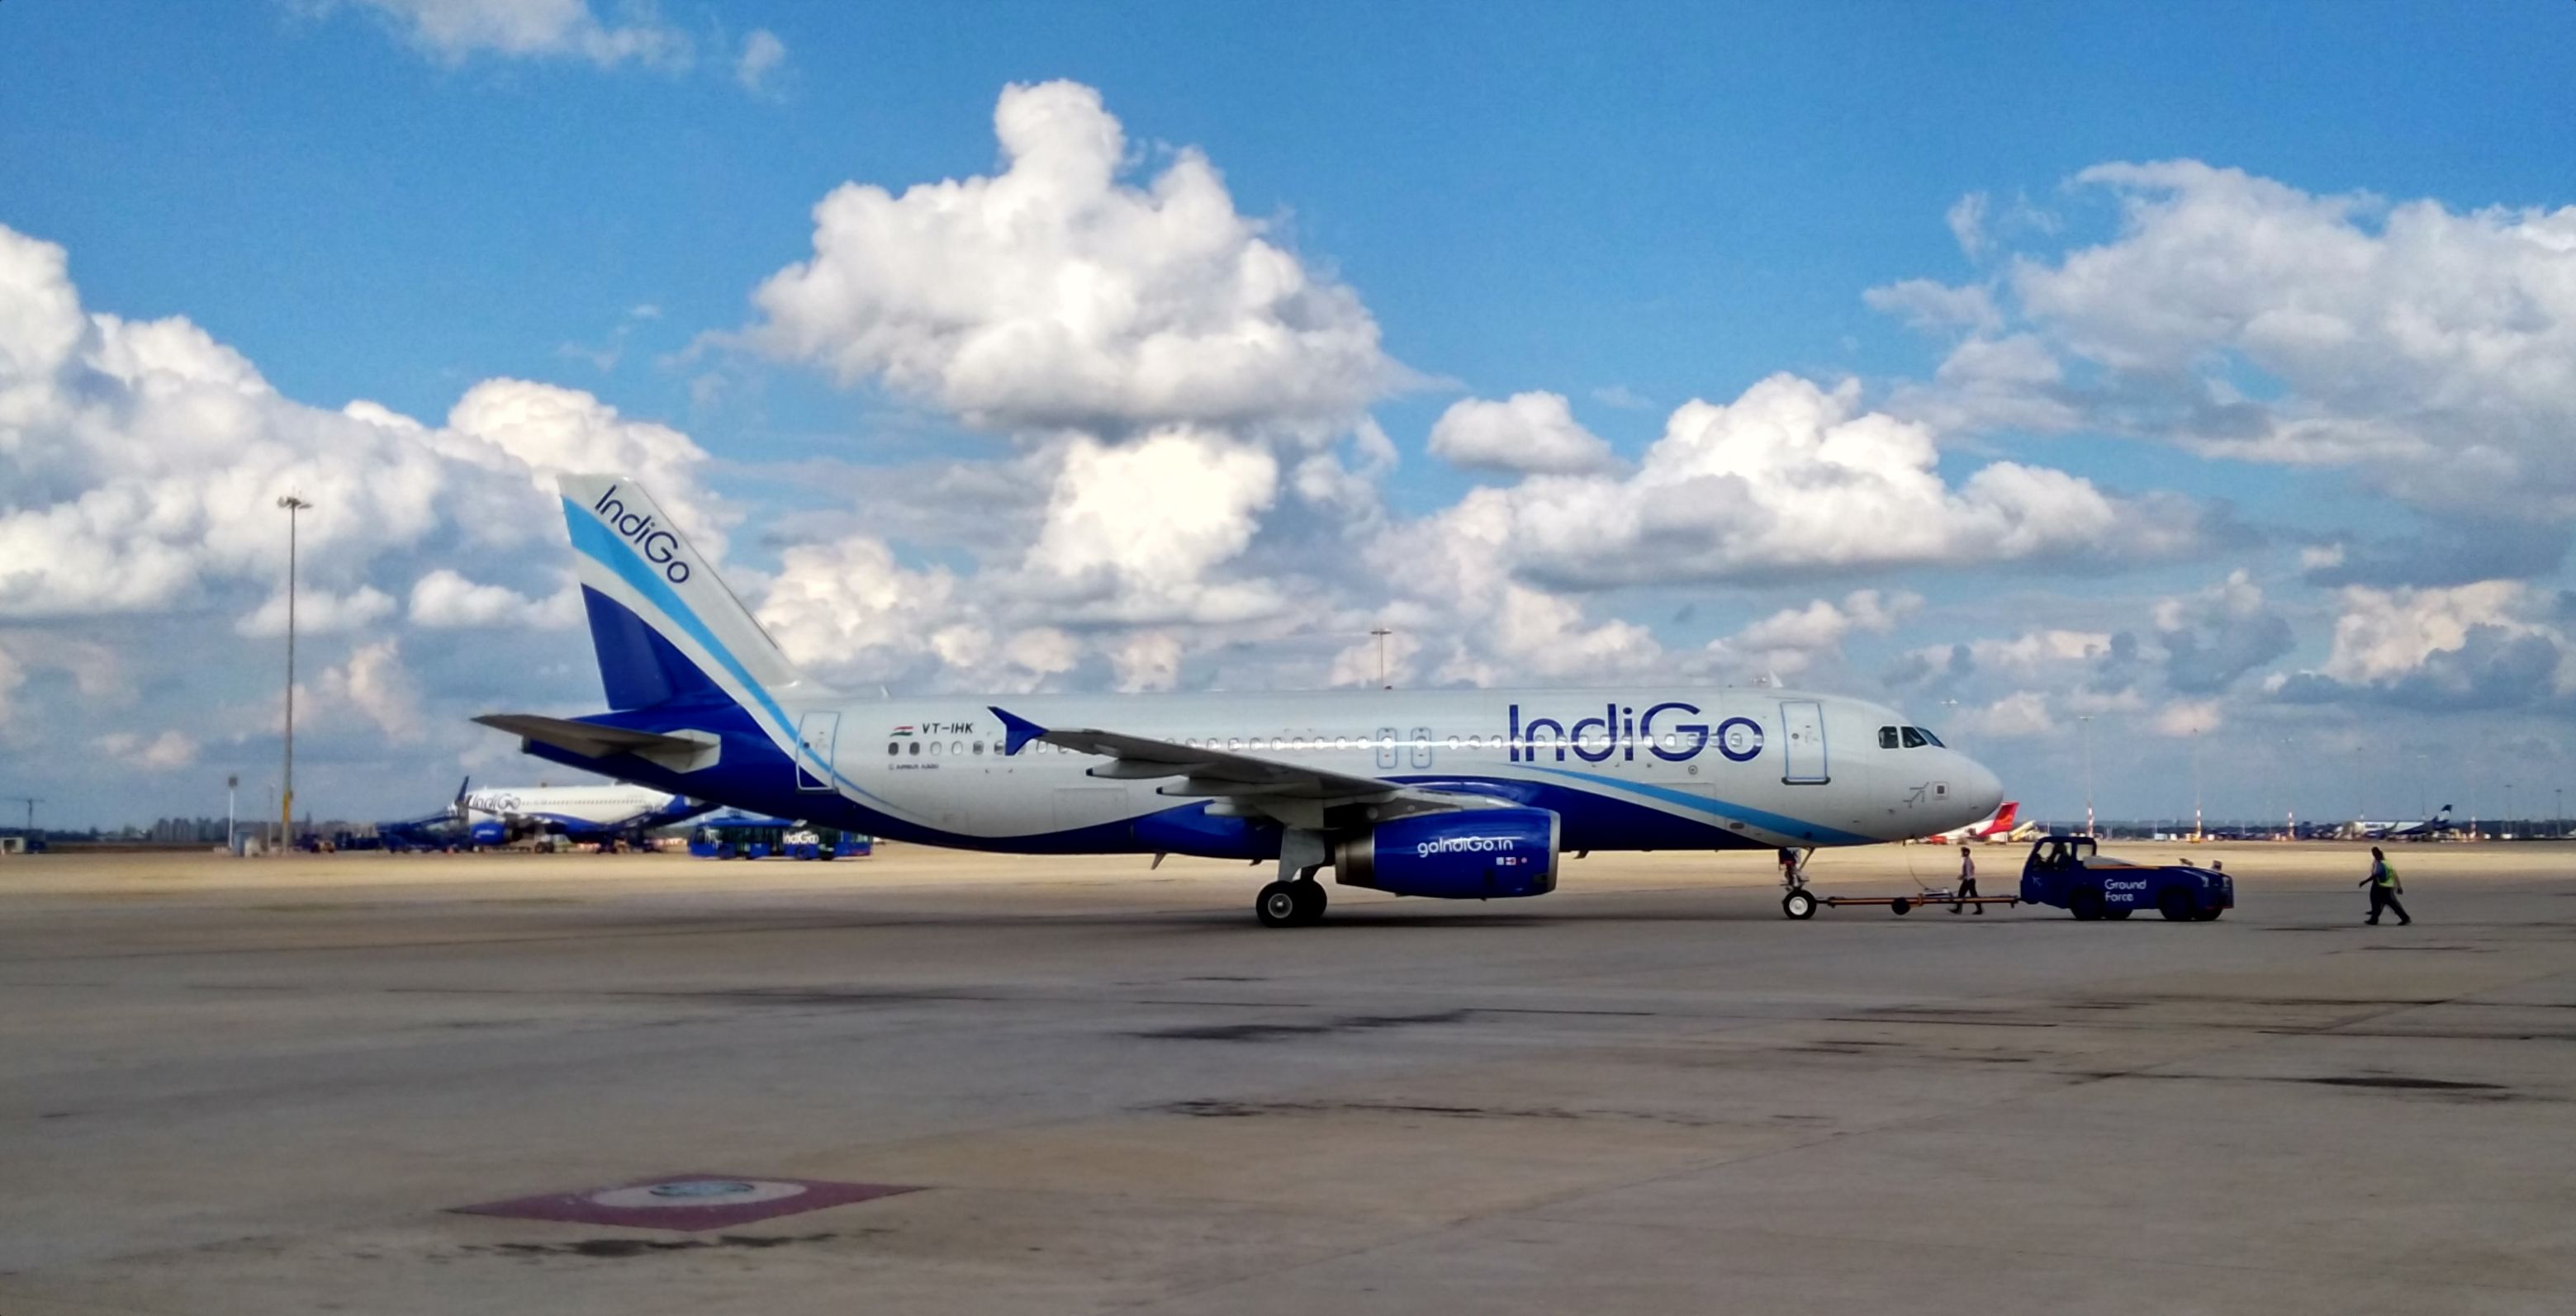 IndiGo Airbus aircraft parked at an airport